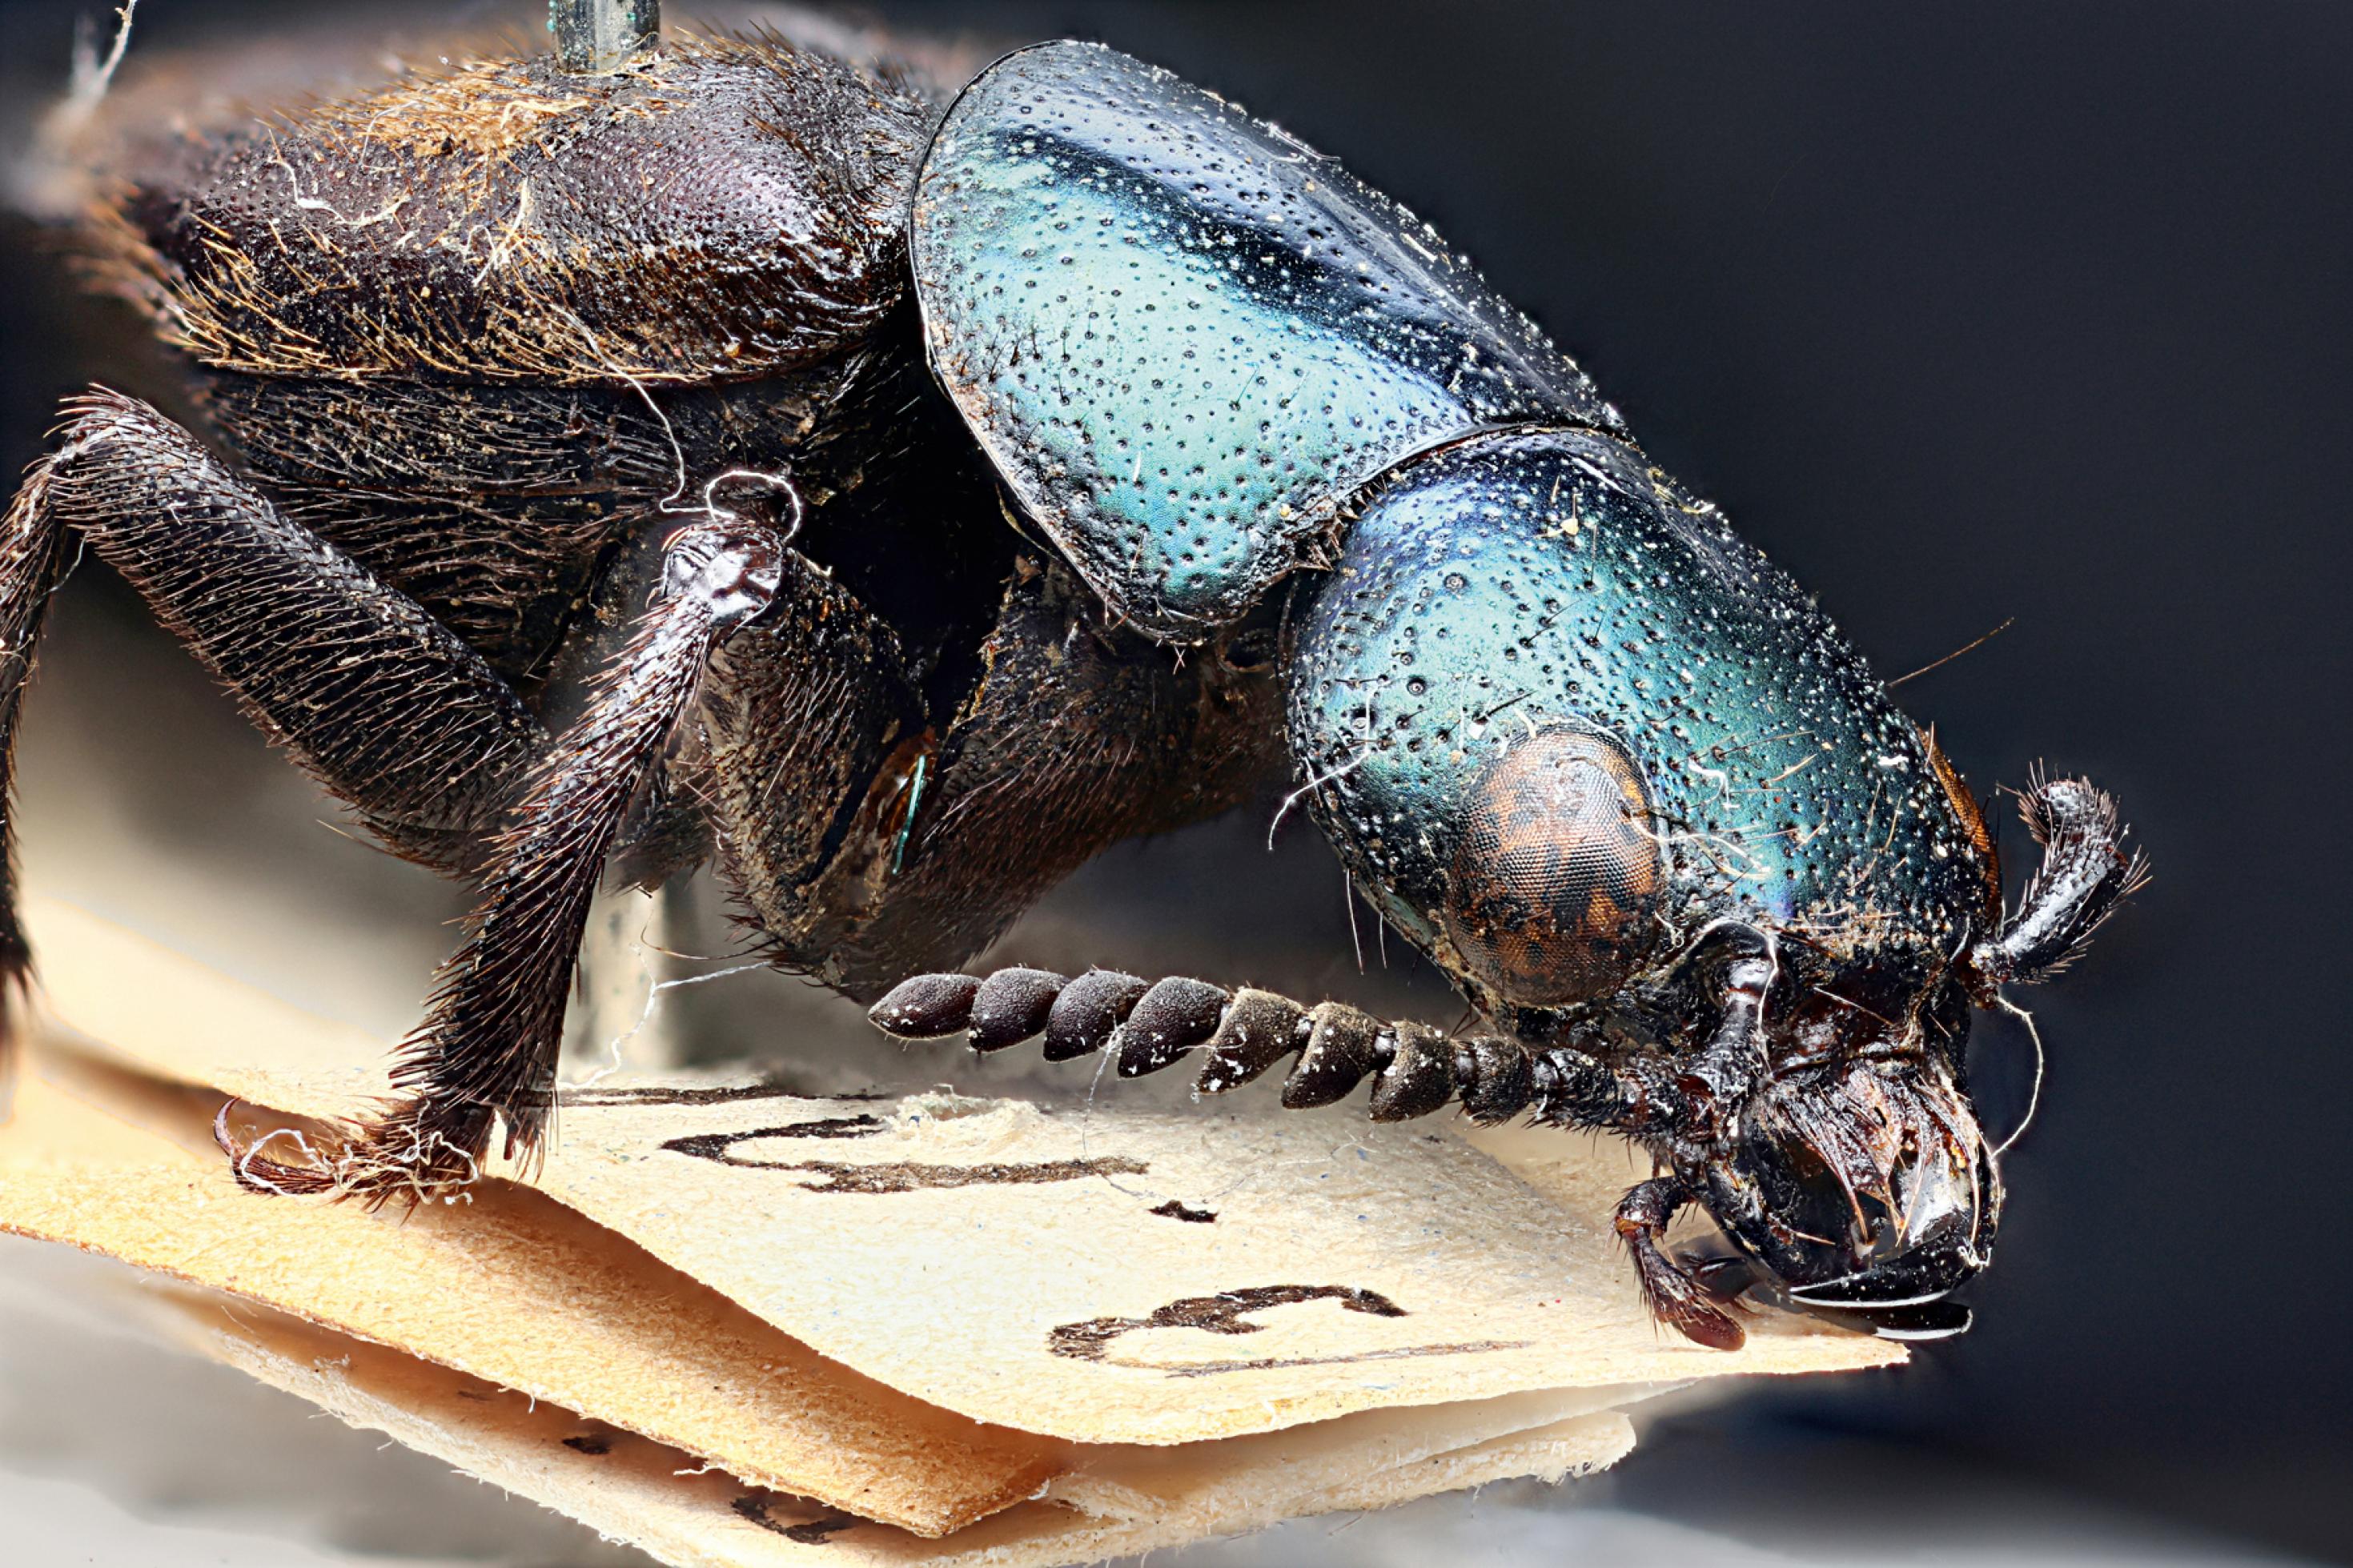 Der Käfer Darwinilus sedarisi hat eine besondere Geschichte.